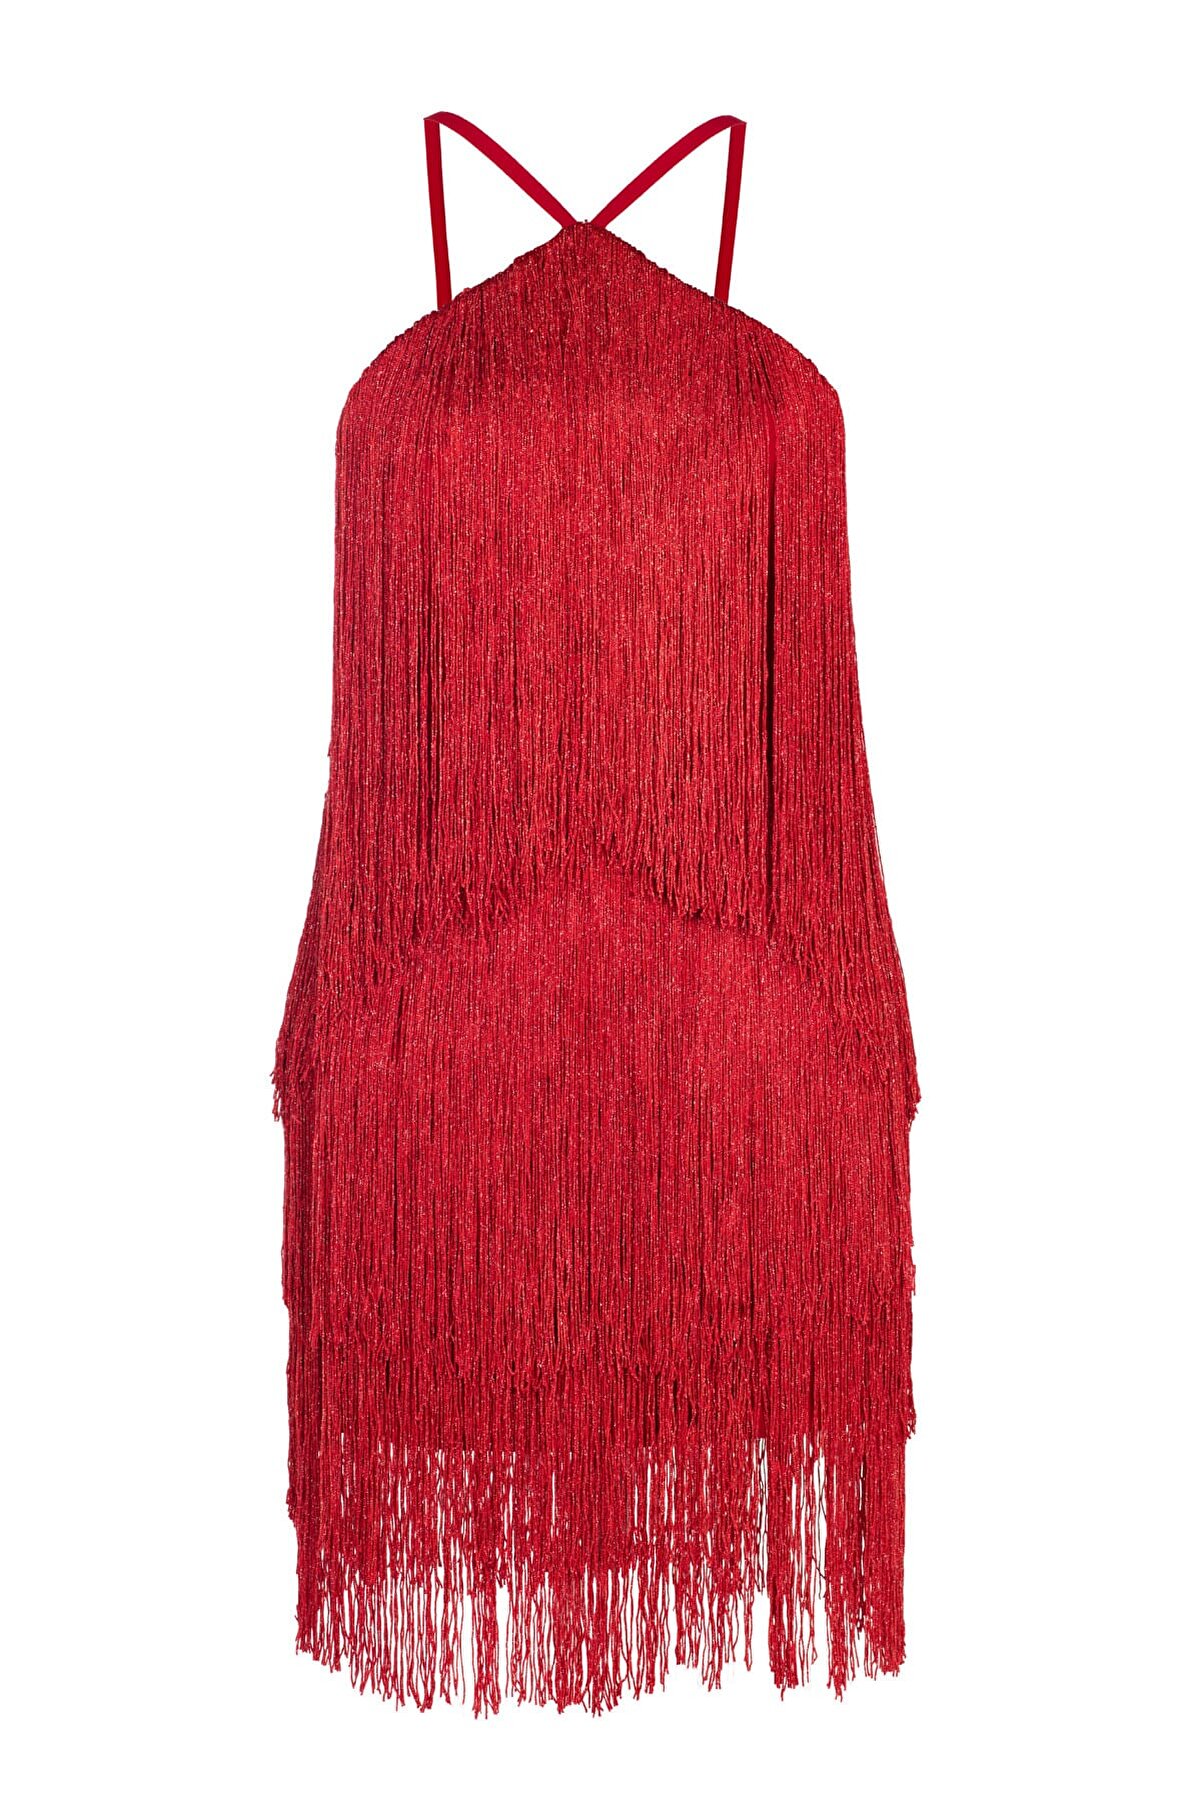 Barrus Kadın Kırmızı Lılıum Elbise barrus92